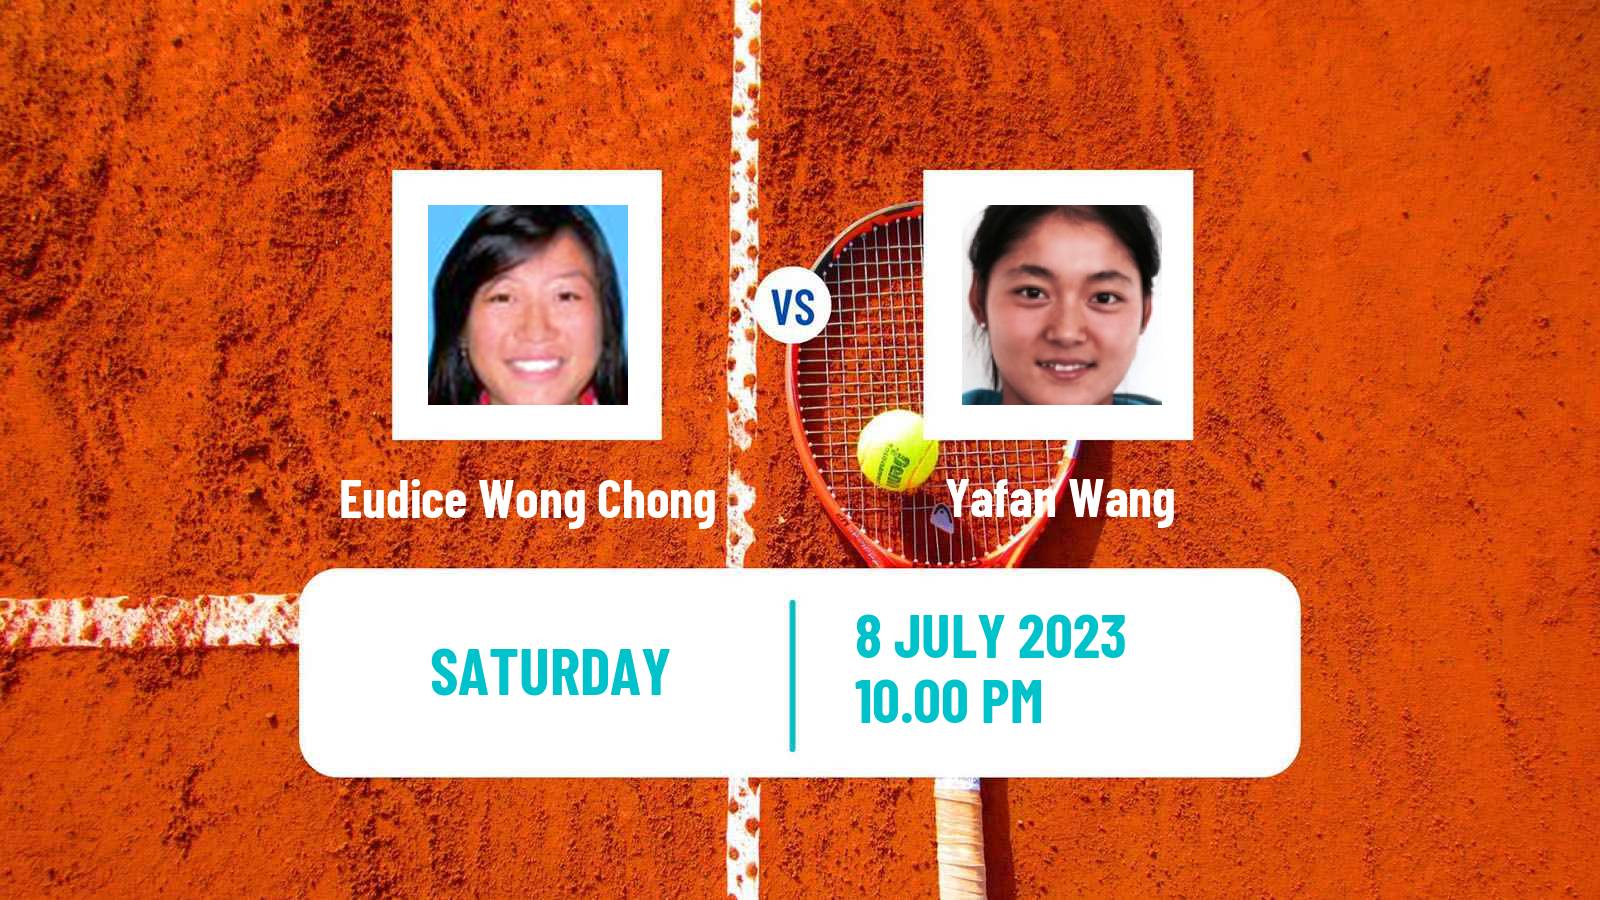 Tennis ITF W40 Hong Kong Women Eudice Wong Chong - Yafan Wang